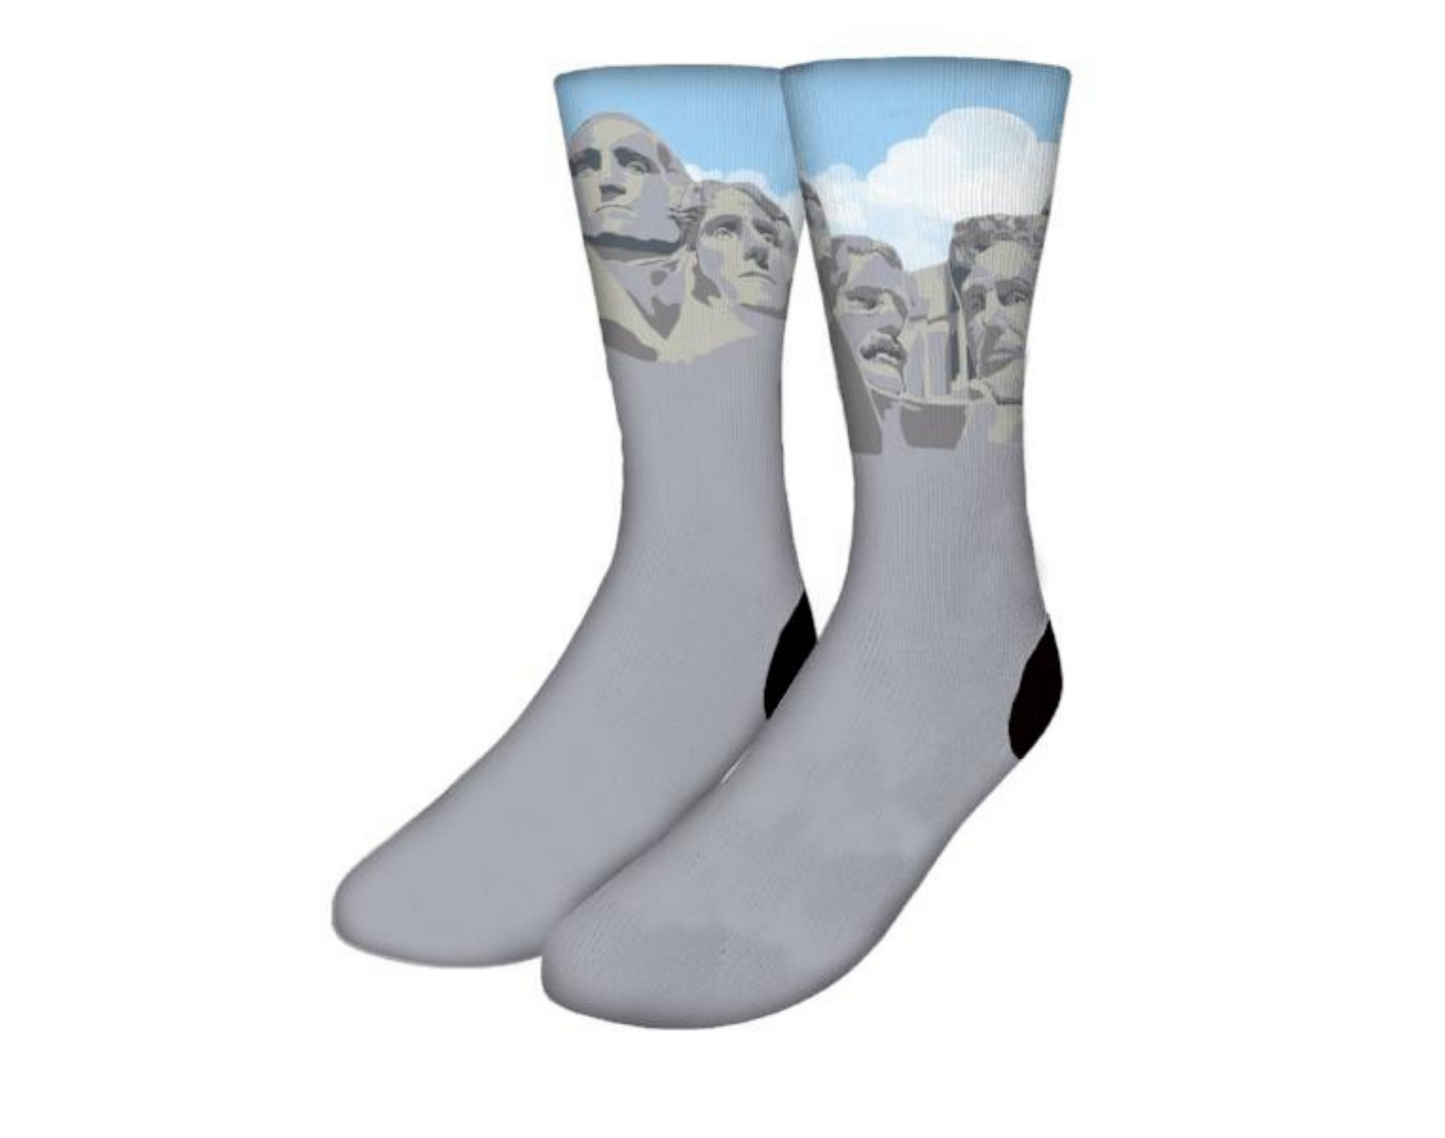 Mt. Rushmore Socks